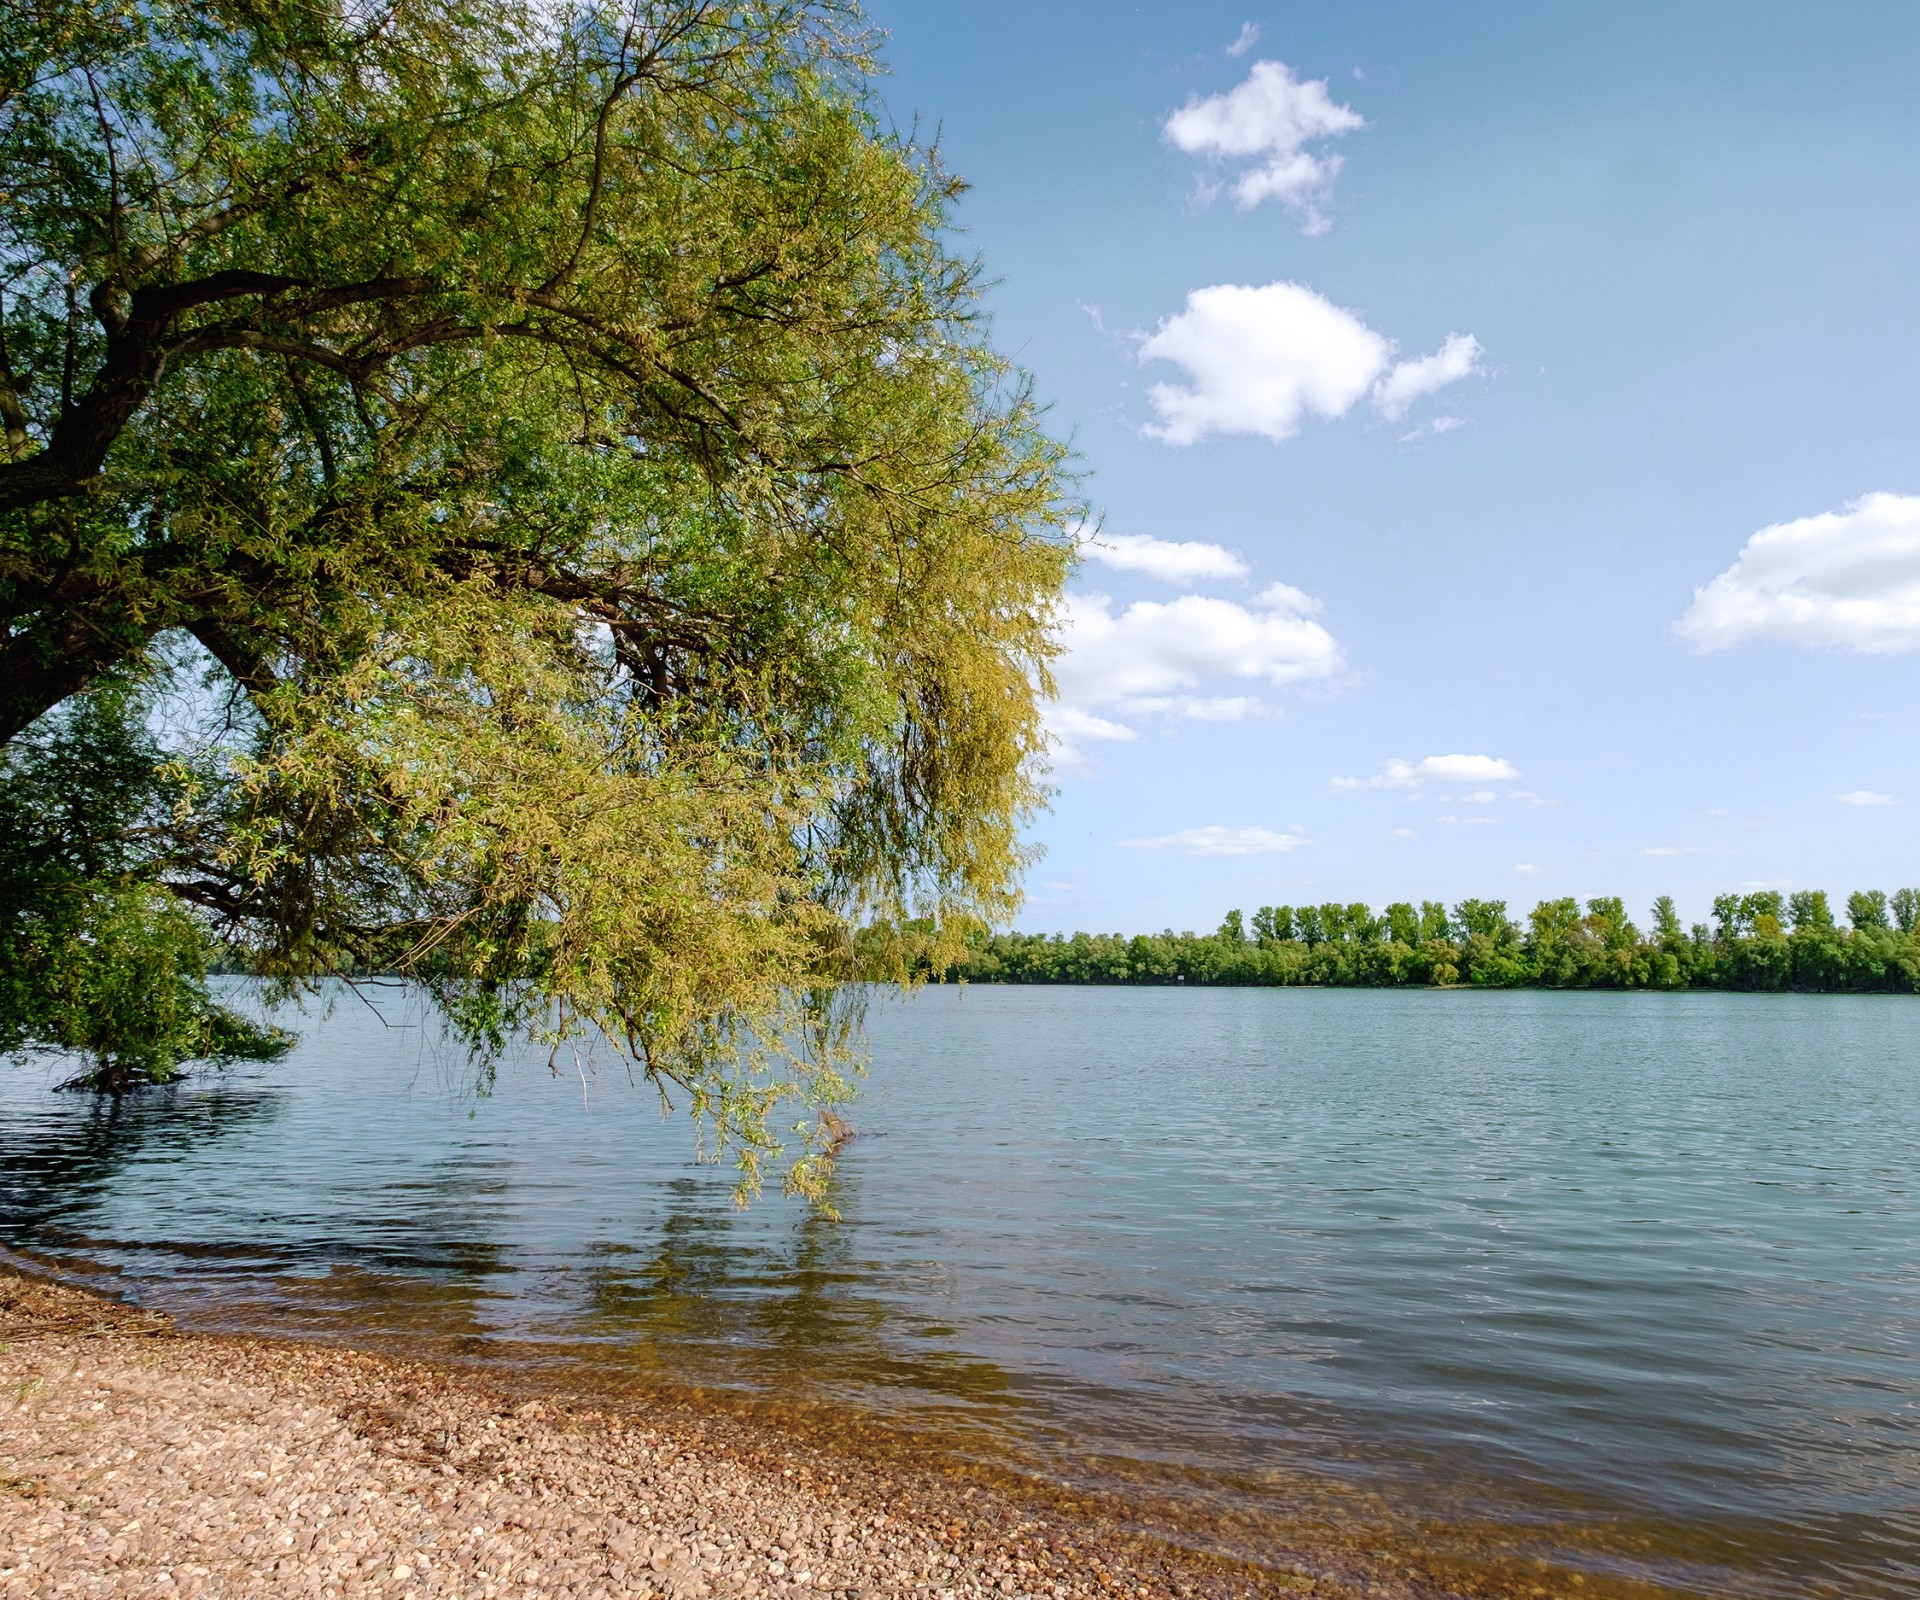 Baum am Ufer eines Sees mit Blick auf die andere Uferseite